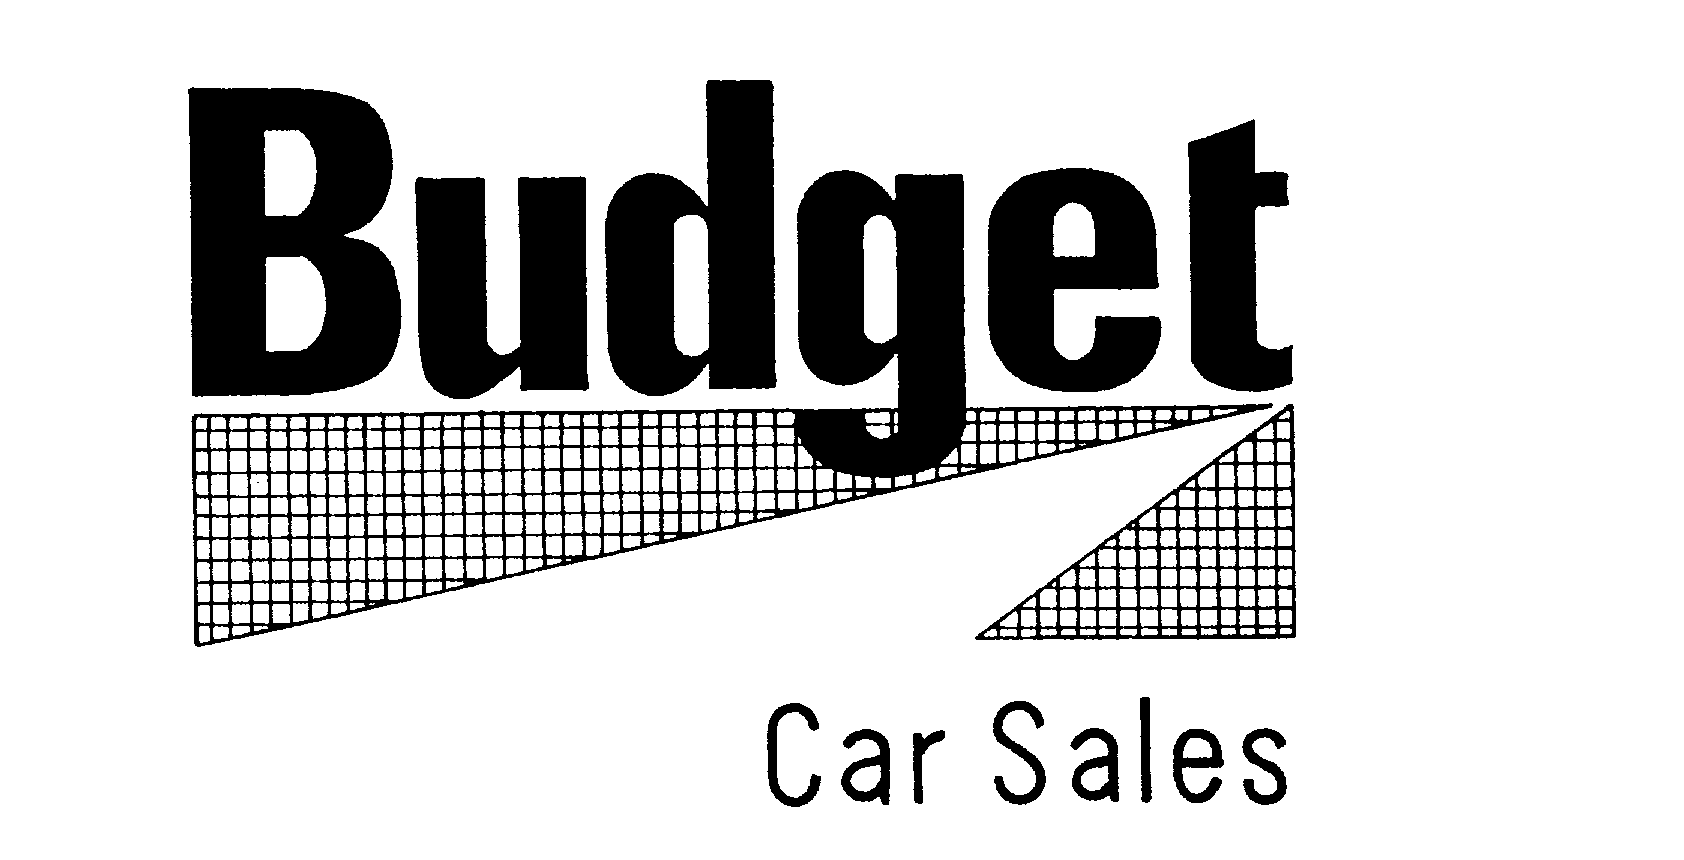  BUDGET CAR SALES